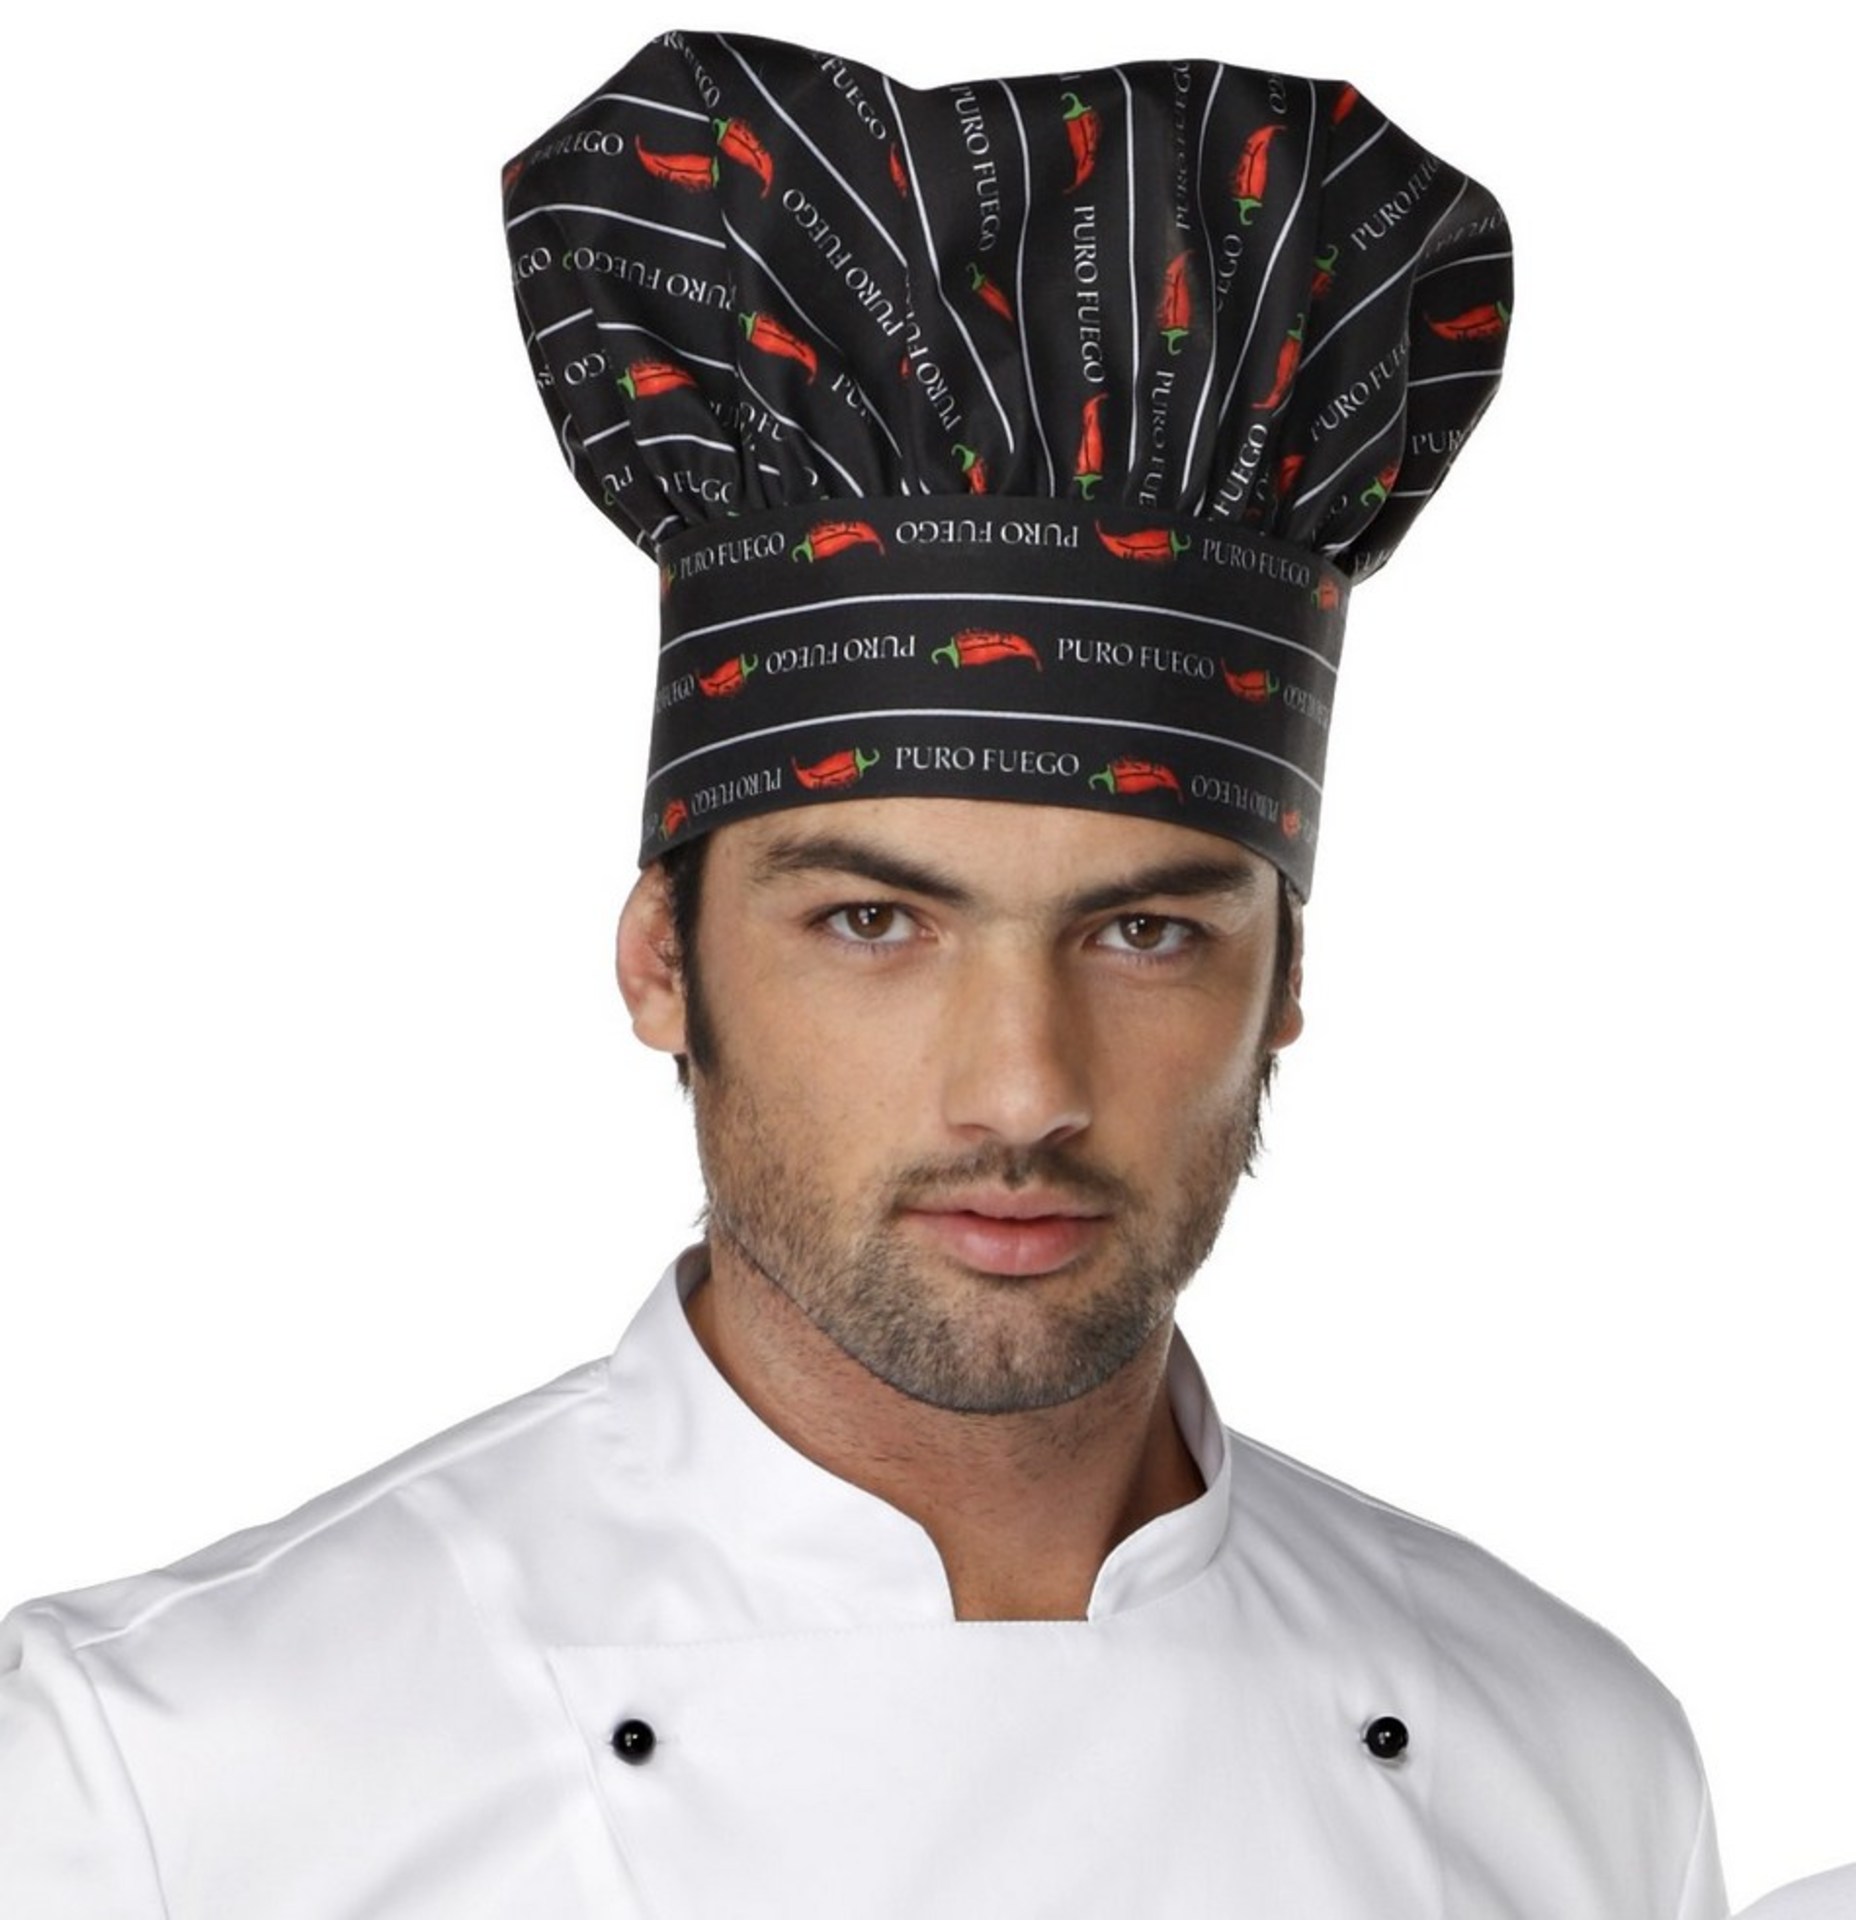 Nilson toque chef cuisinier (AP741623-01)